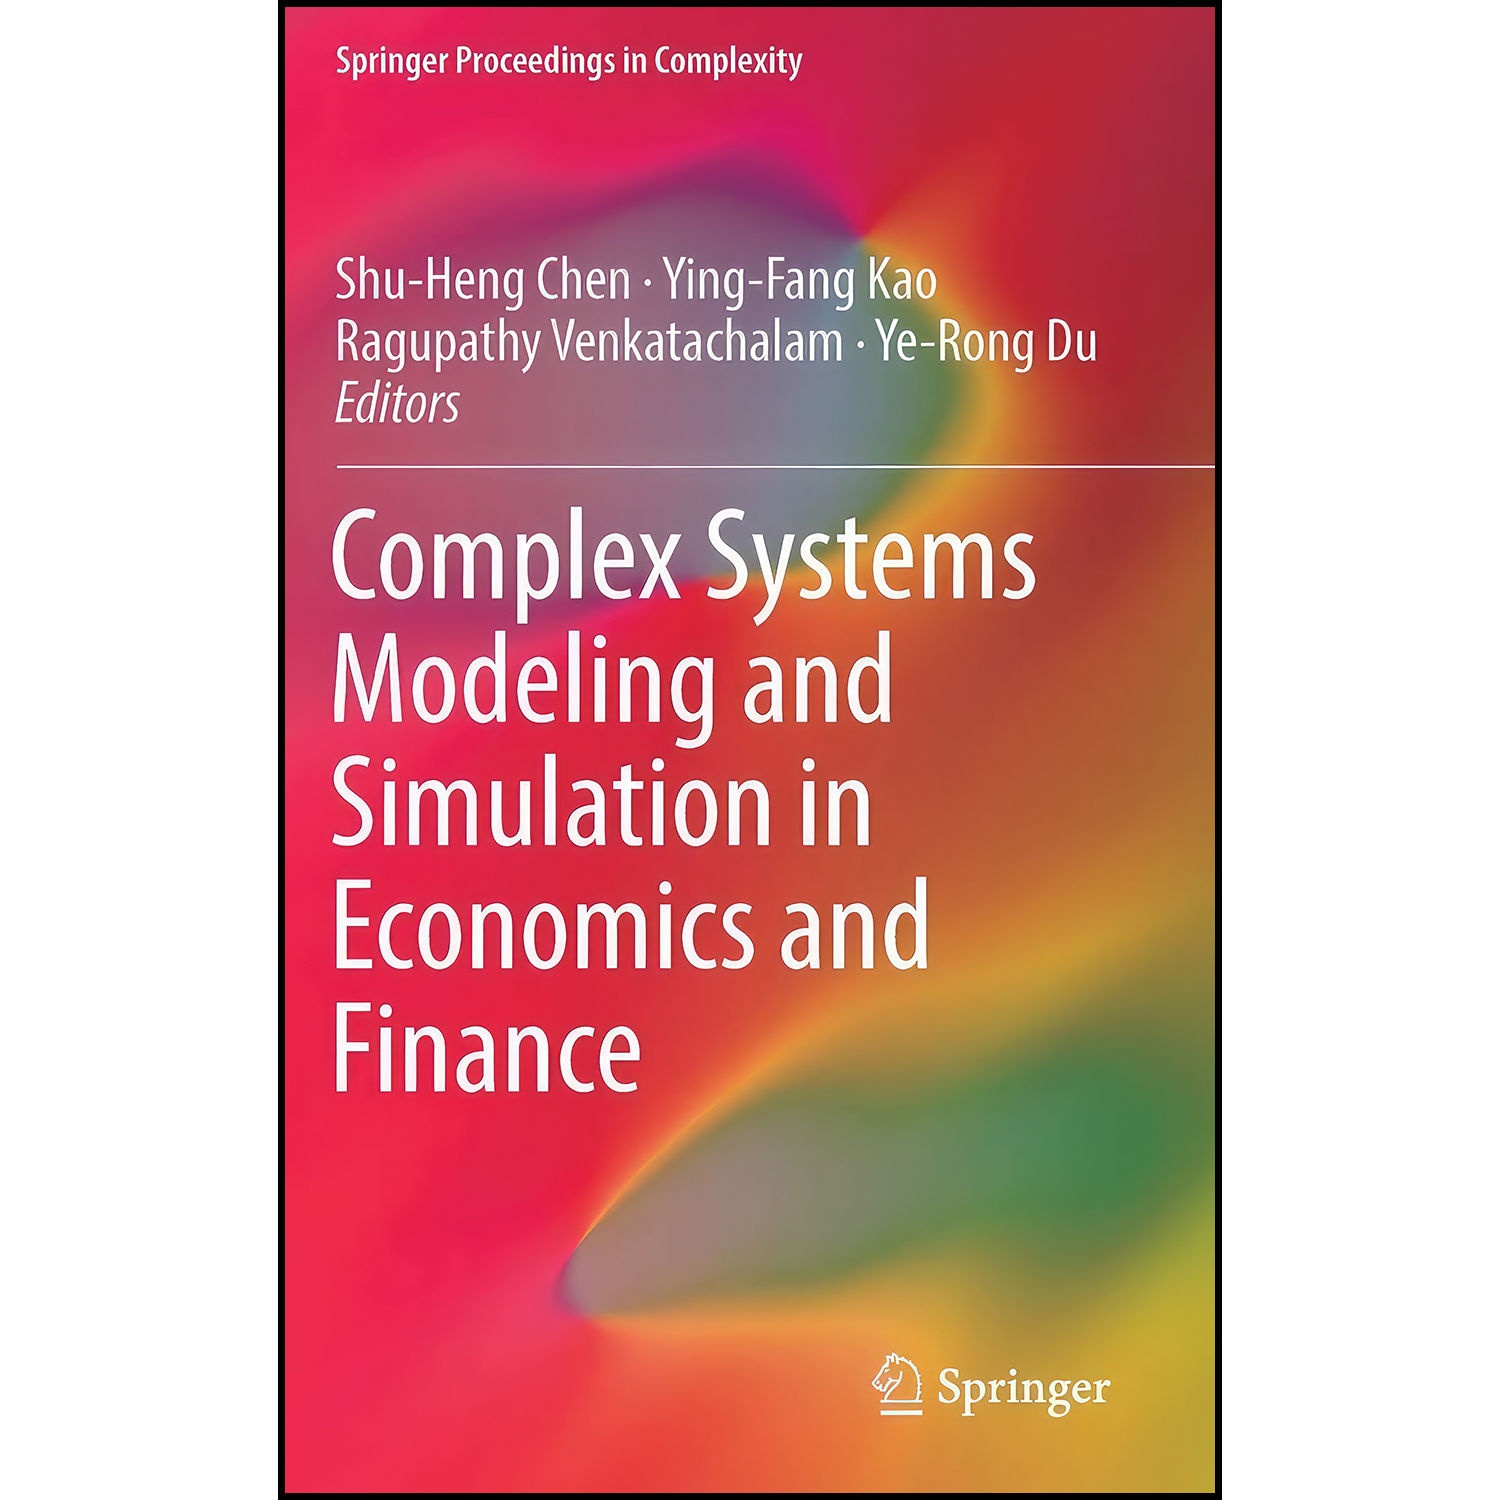 کتاب Complex Systems Modeling and Simulation in Economics and Finance اثر جمعي از نويسندگان انتشارات Springer